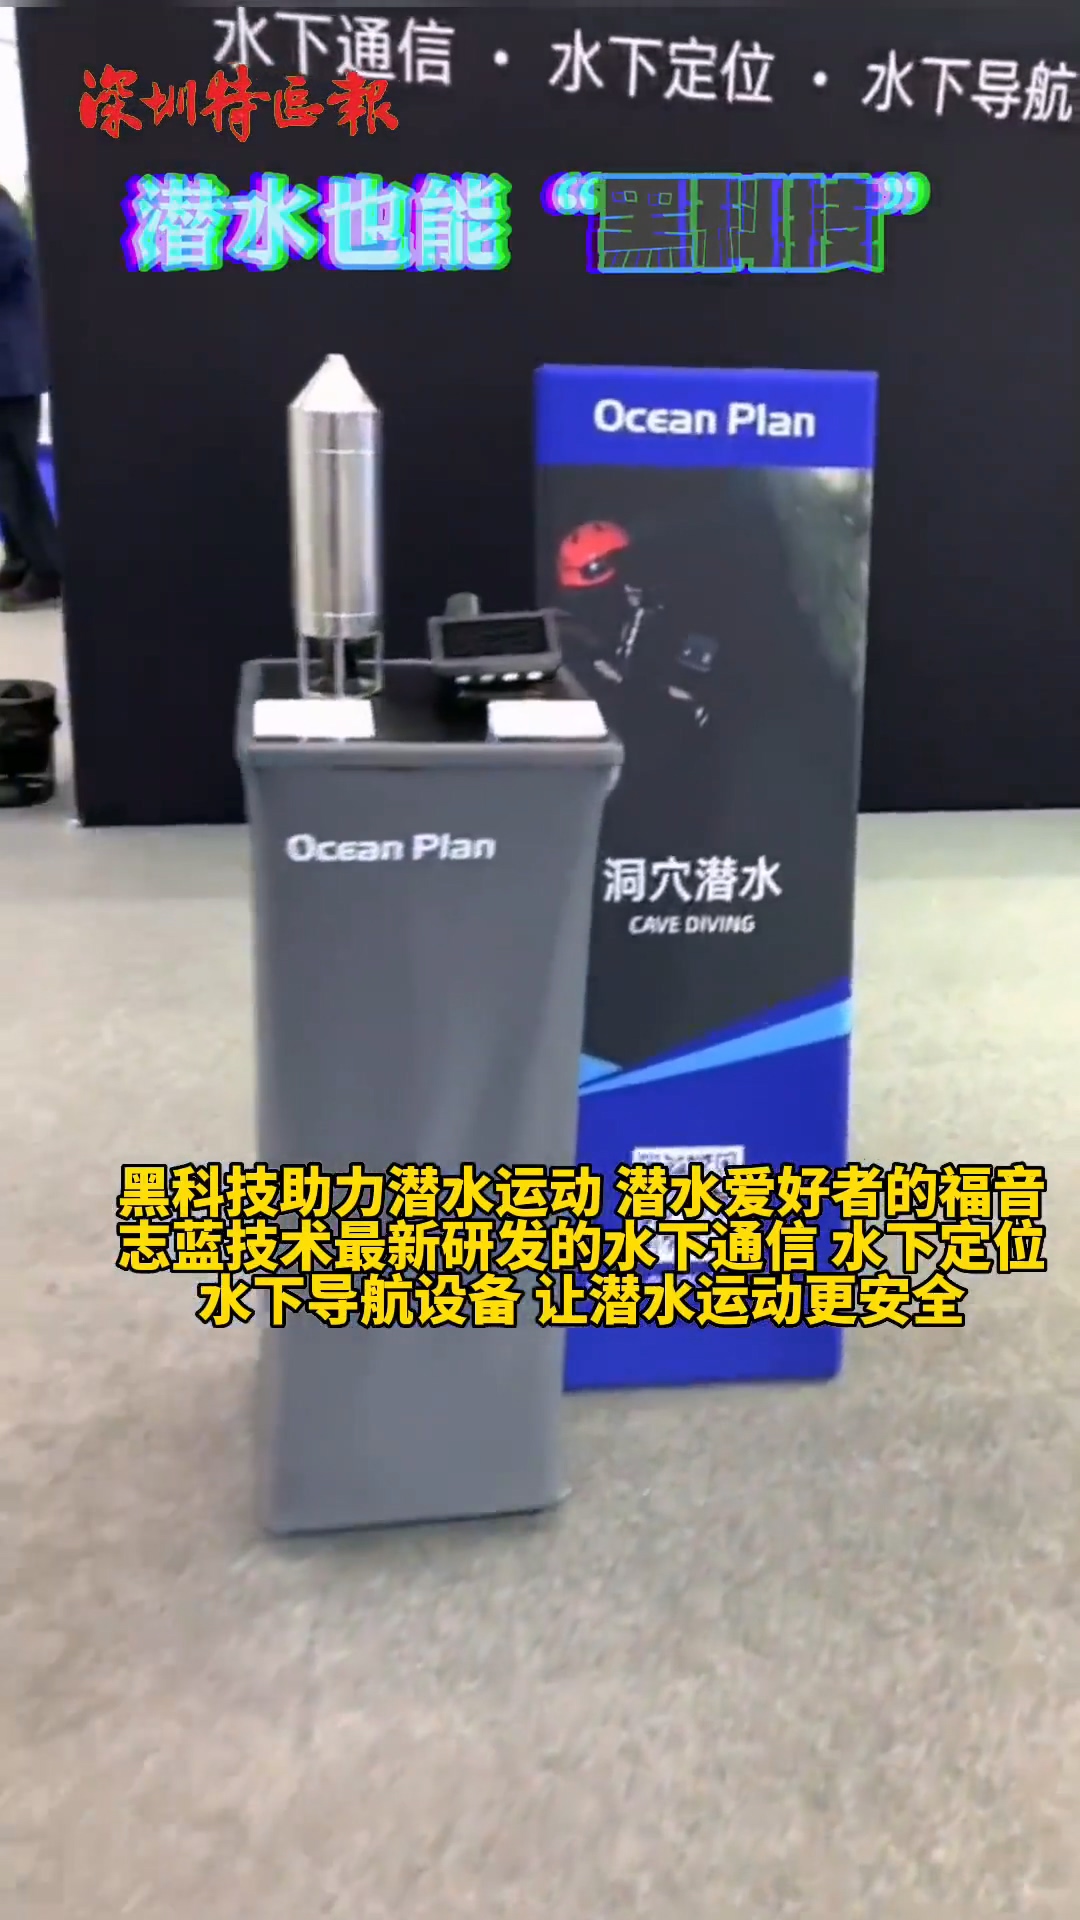 Ocean Plan was interviewed by GDTV, Shenzhen Press Group etc..